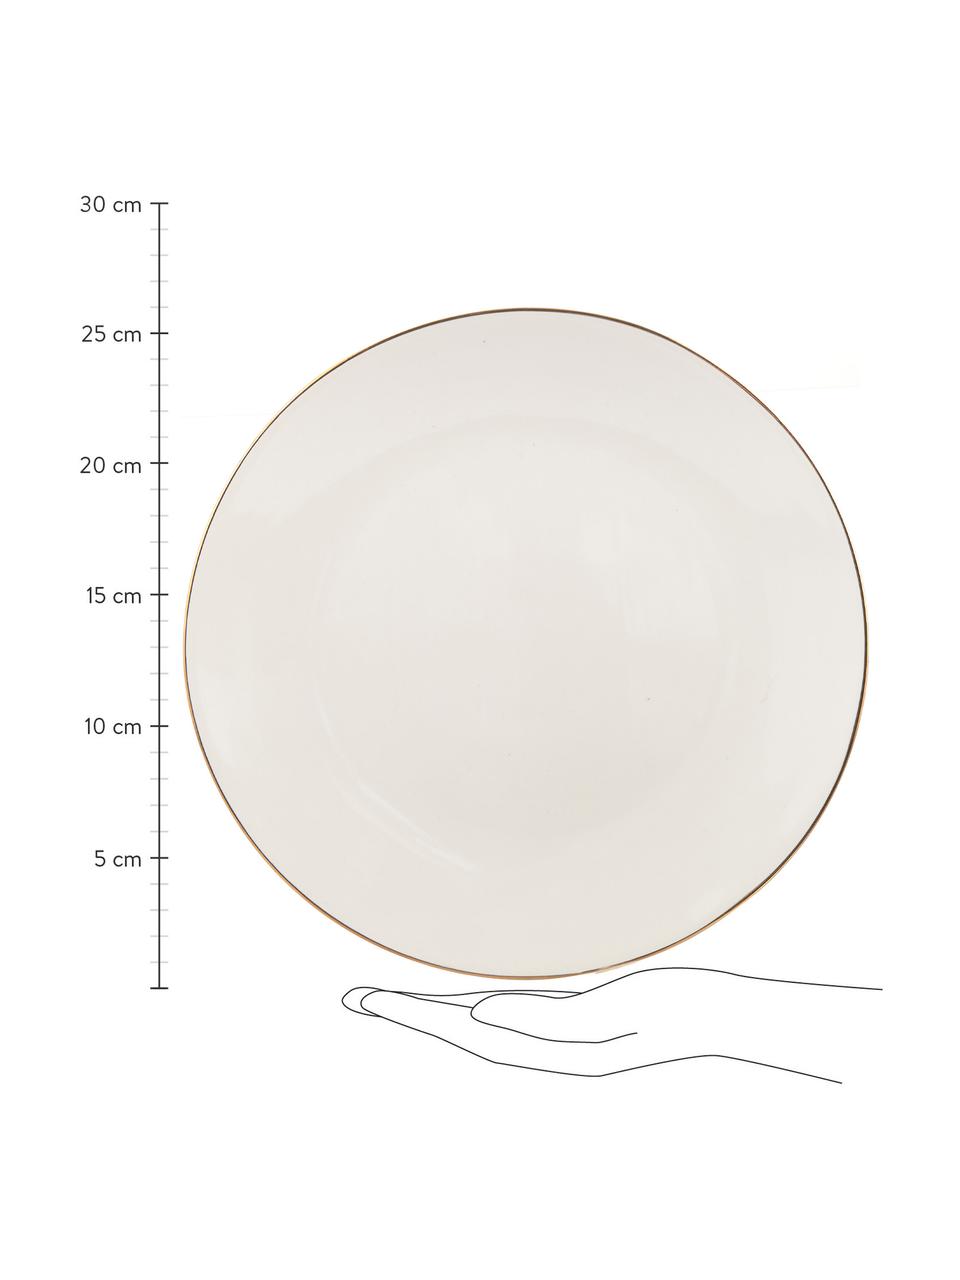 Ręcznie wykonany talerz duży Allure, 6 szt., Ceramika, Biały, odcienie złotego, Ø 26 cm